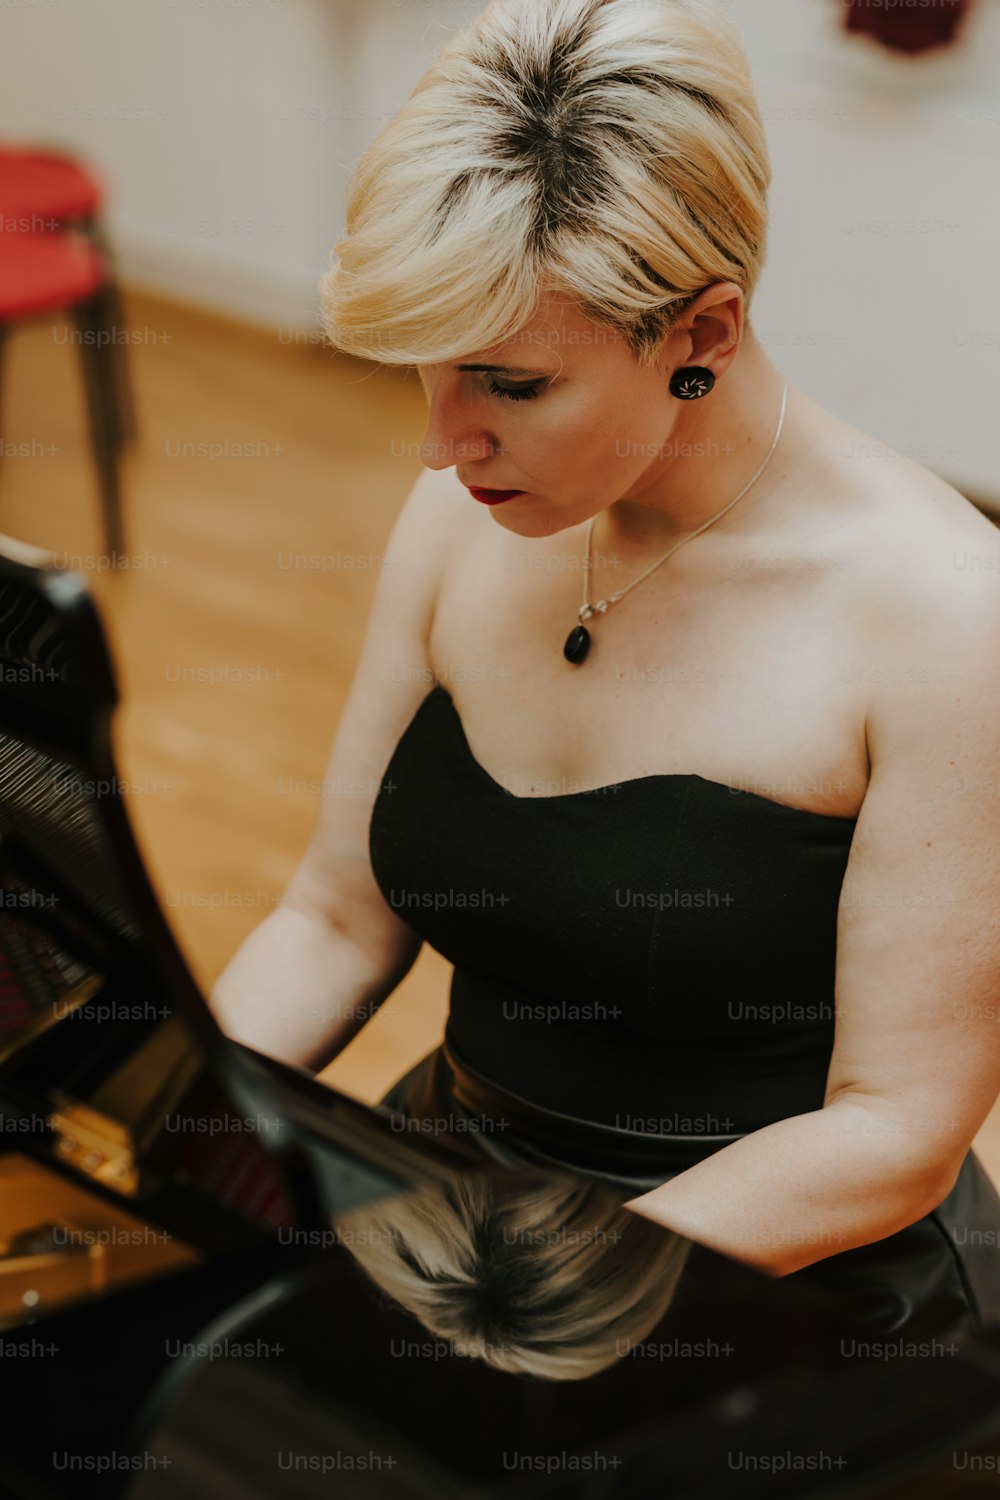 Una donna in un vestito nero che suona un pianoforte